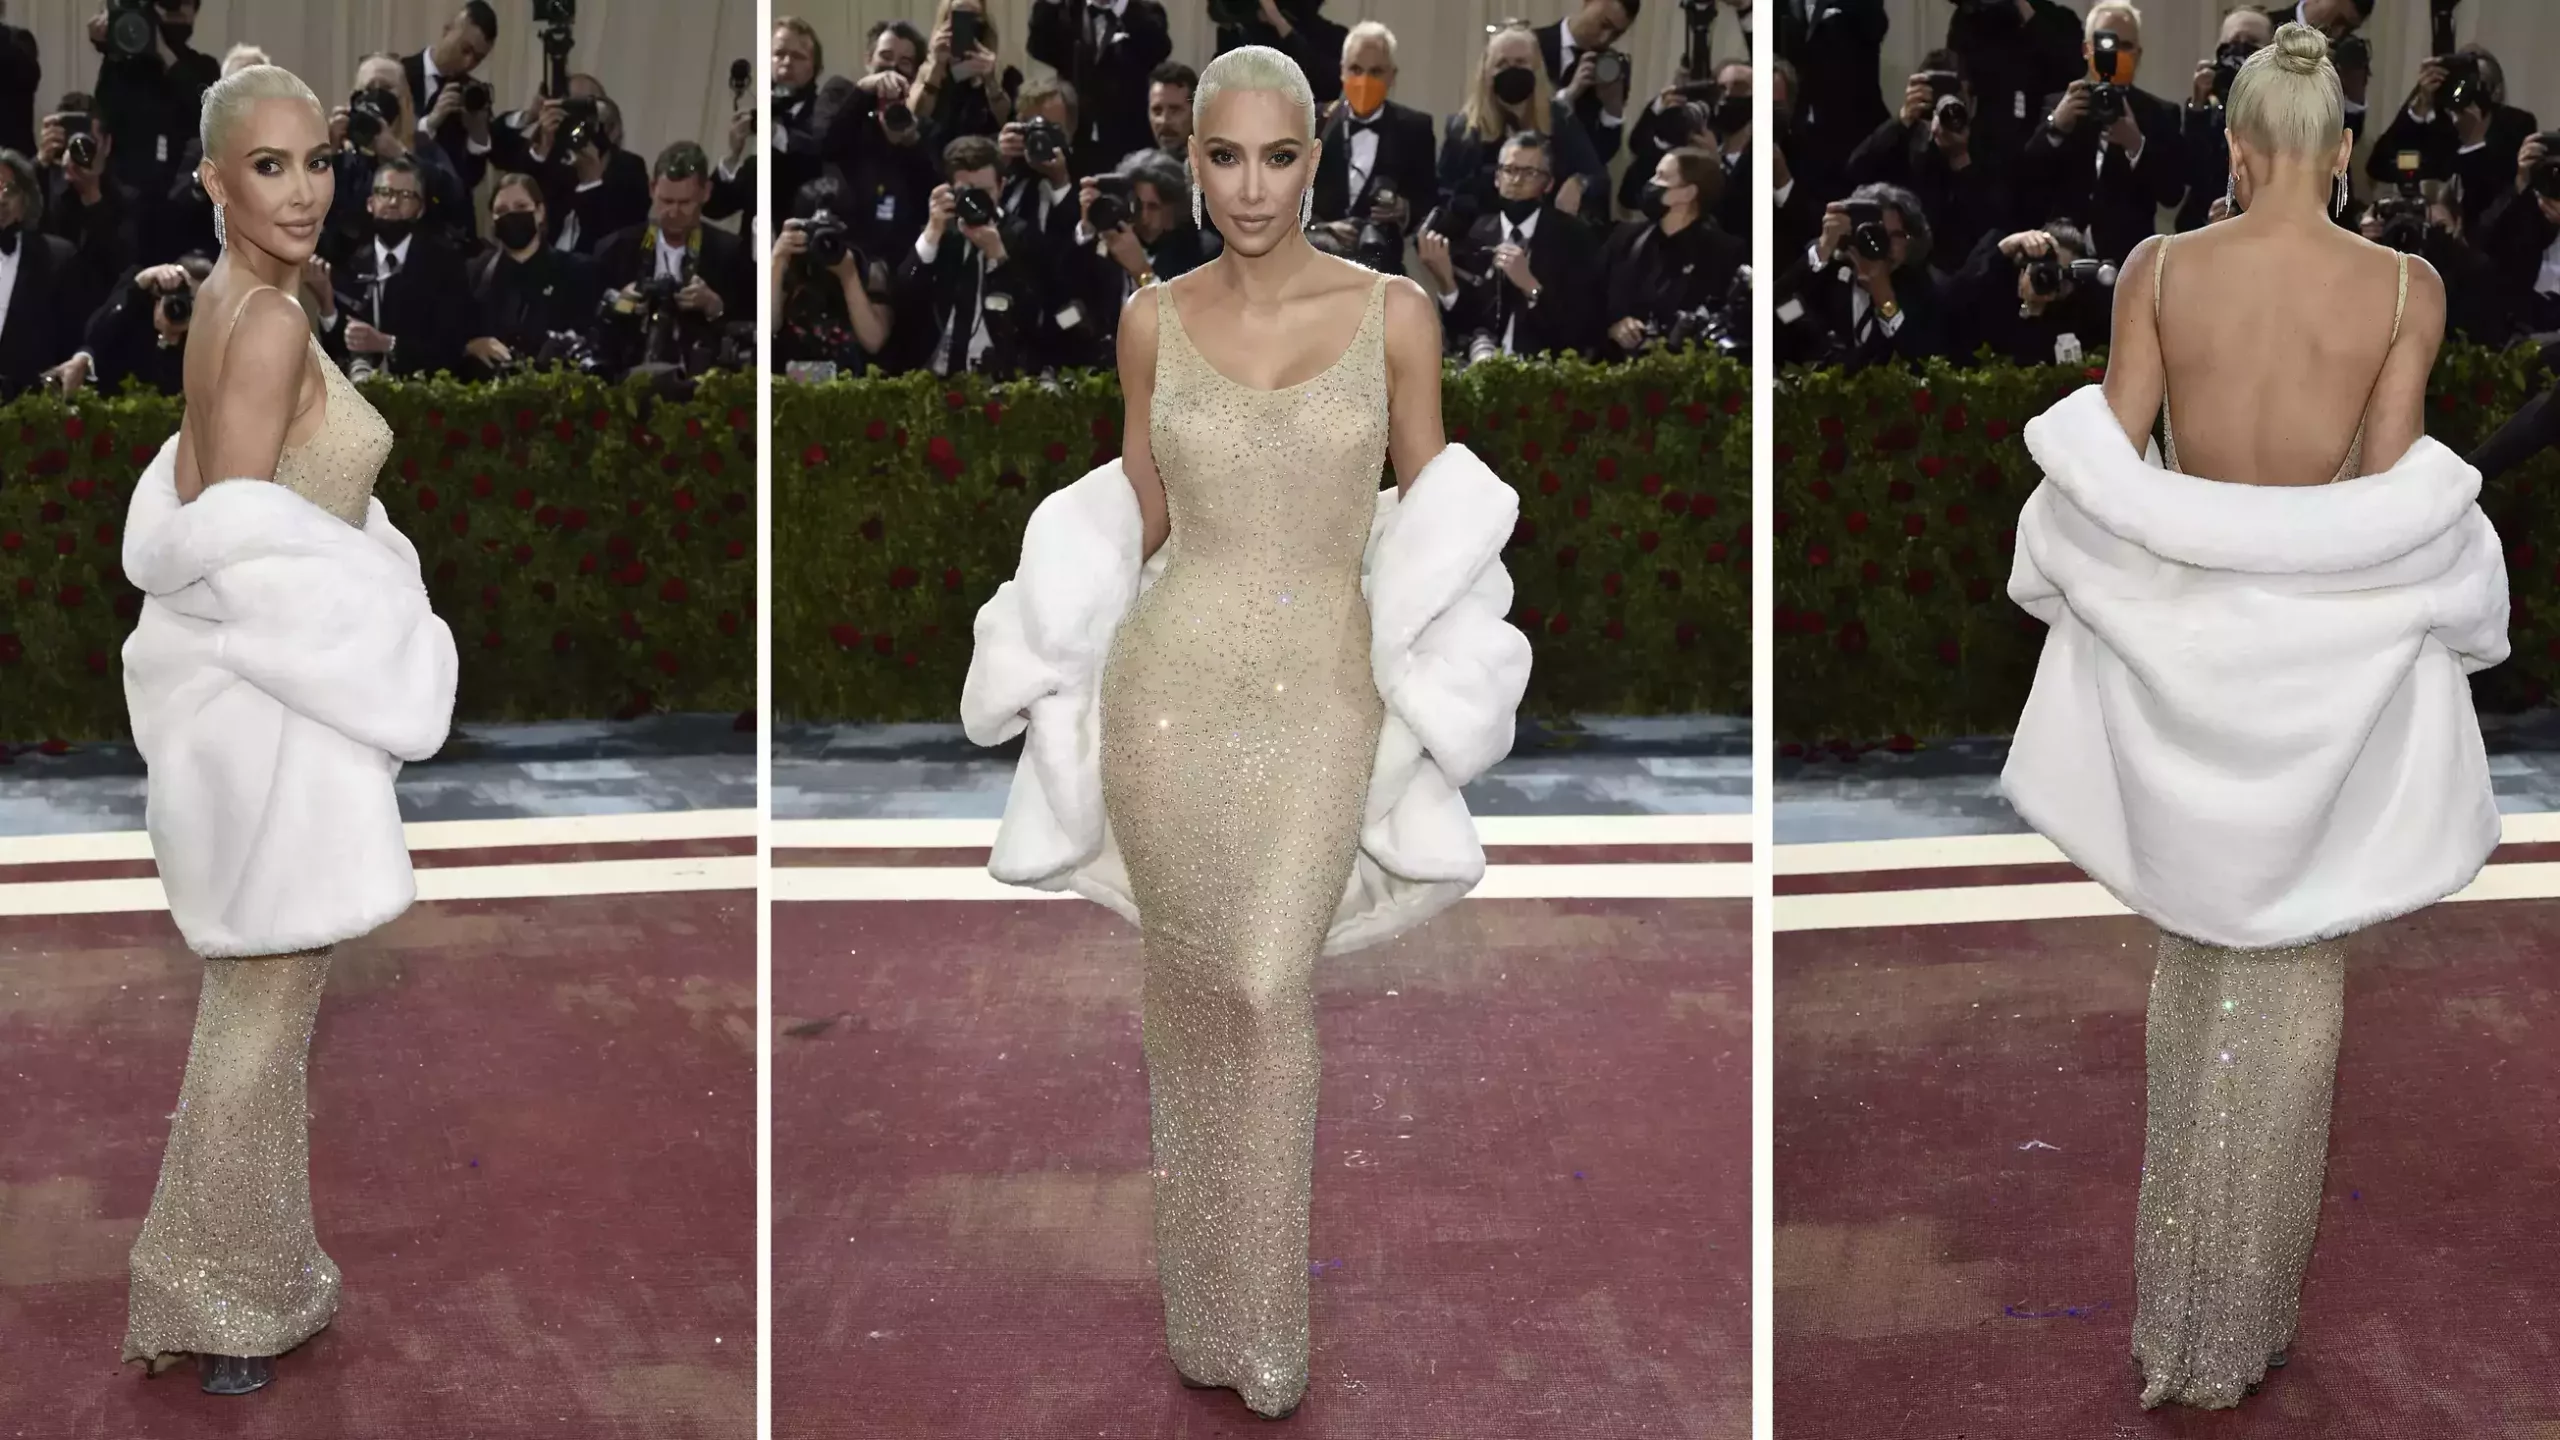 Kim Kardashian at Met Gala 2022 wearing the Marilyn Monroe's Iconic Dress